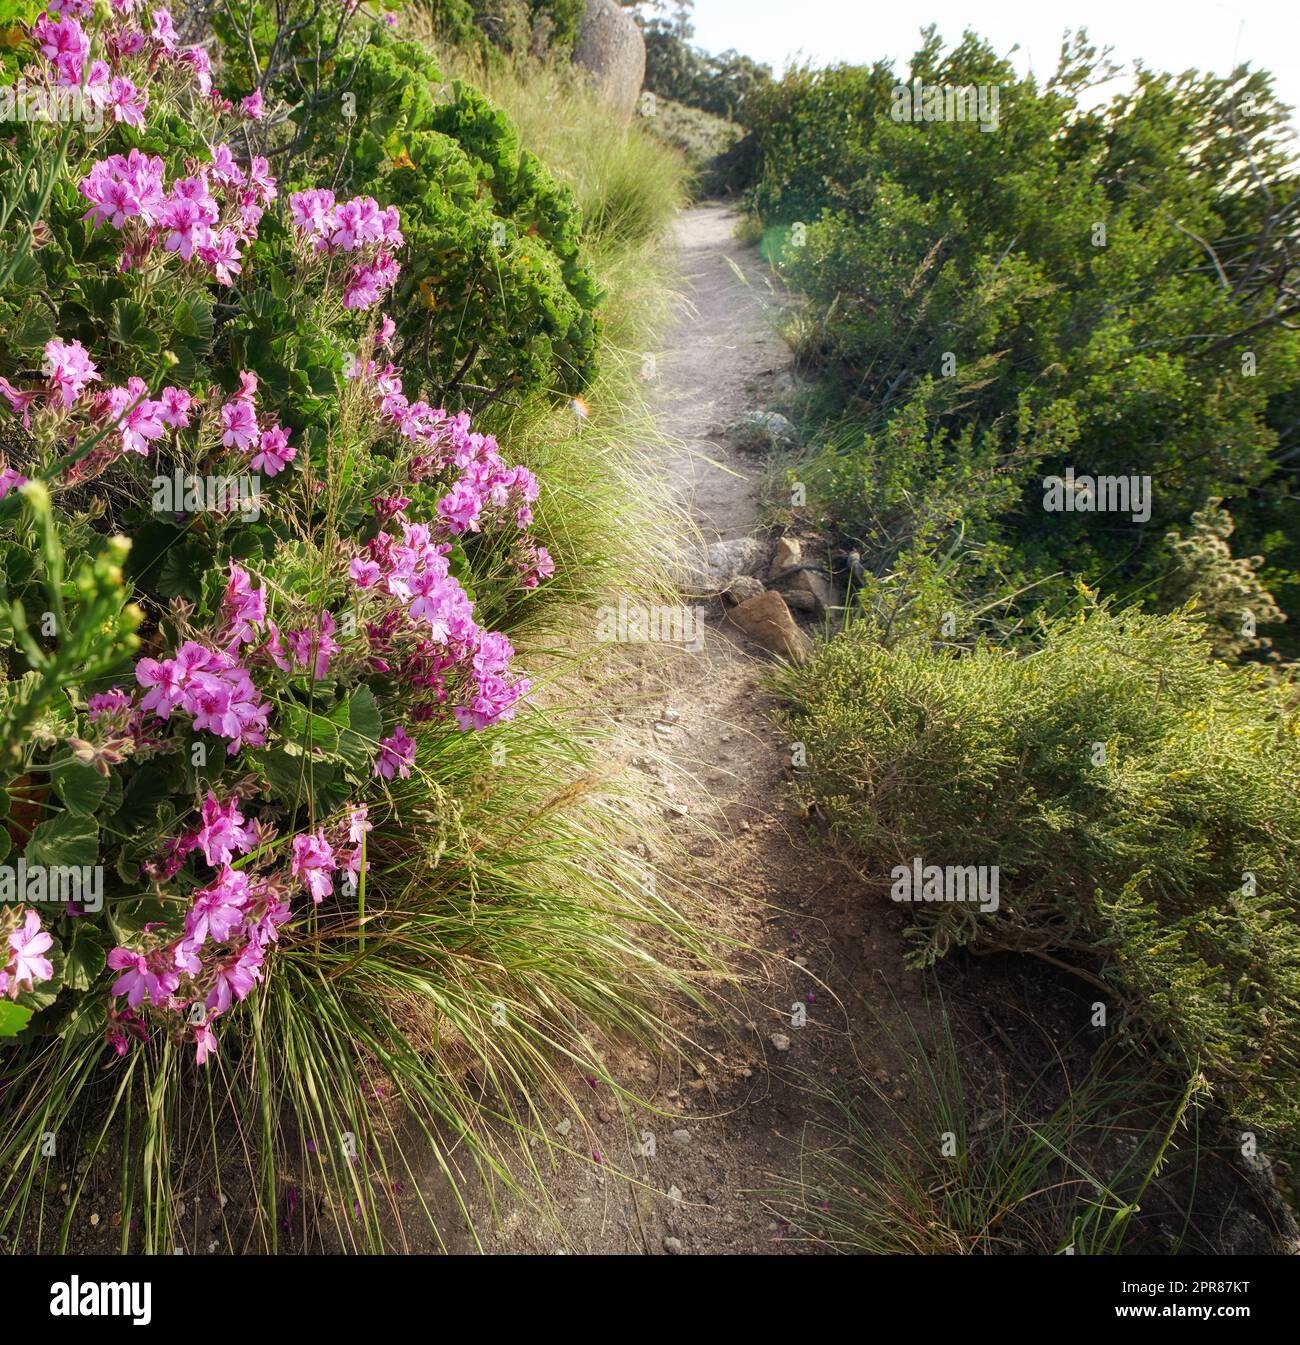 Sentier de randonnée pittoresque le long de la montagne de la Table au Cap, en Afrique du Sud, avec des fleurs vibrantes et des plantes luxuriantes. Magnifique vue panoramique d'un paysage naturel magnifique et sauvage à explorer et à voyager Banque D'Images